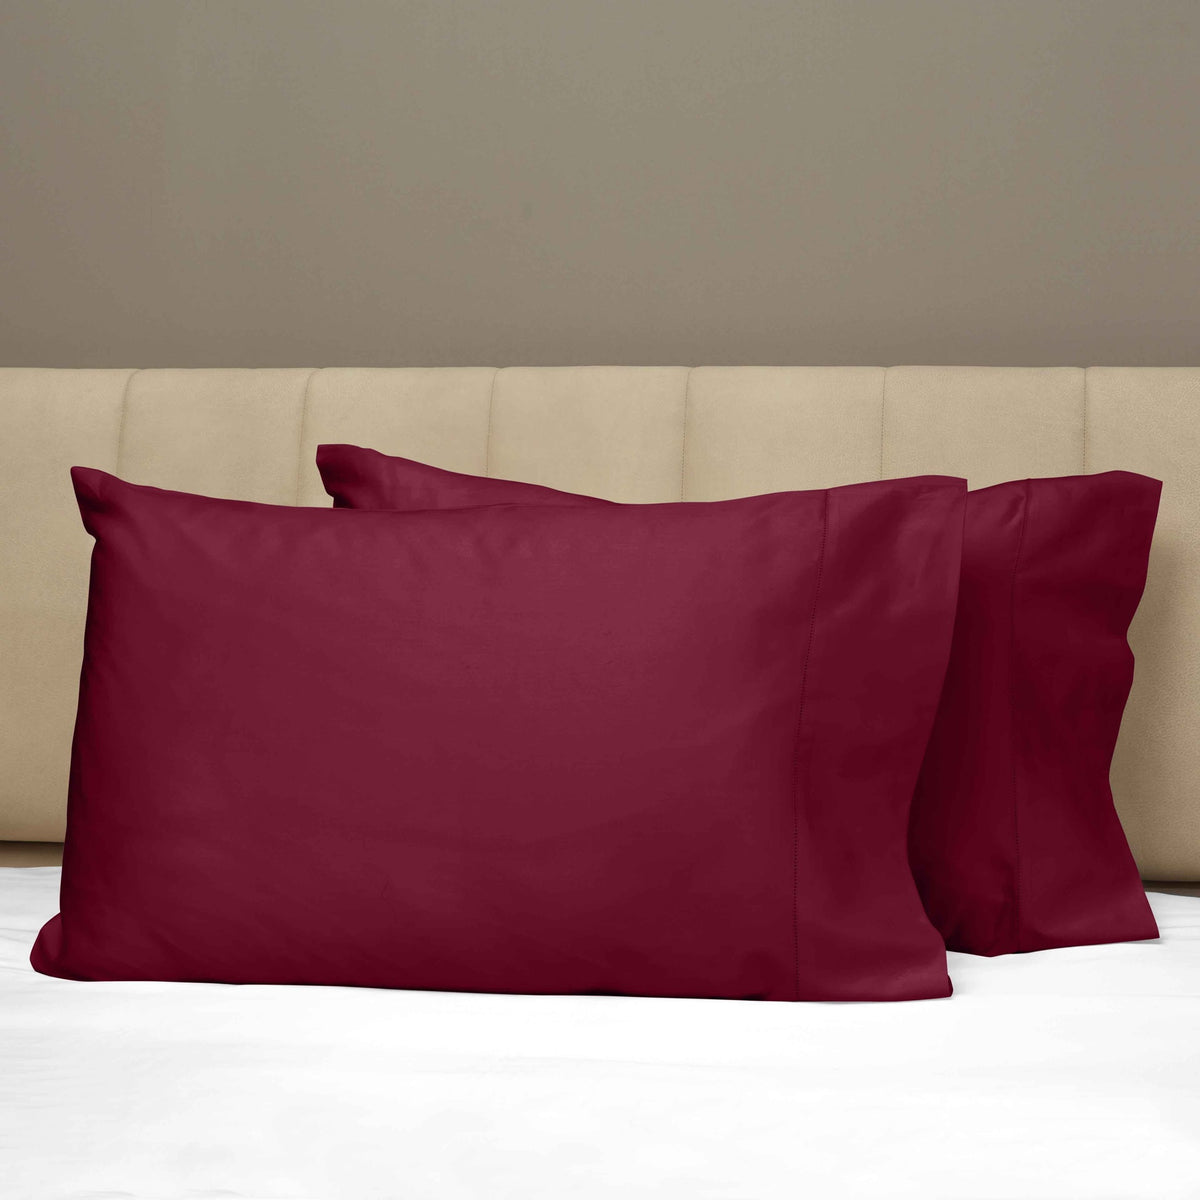 Closeup View of Signoria Raffaello Pillowcases in Cardinale Red Color